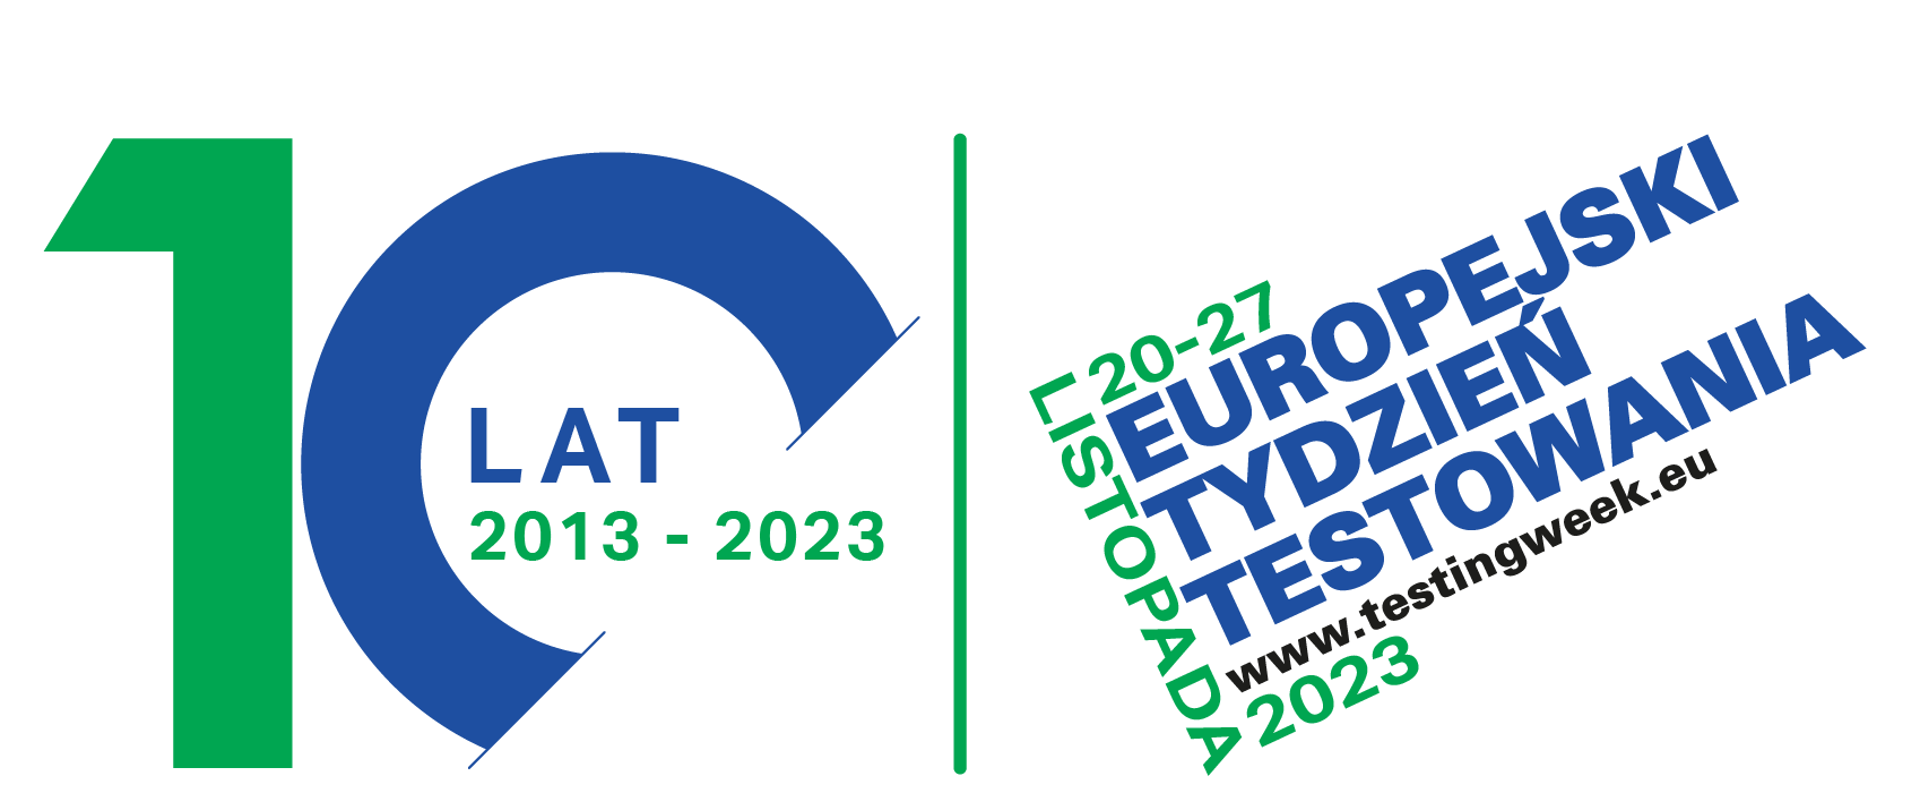 10 lat 2013 - 2023: 20-27 listopada Europejski Tydzień Testowania